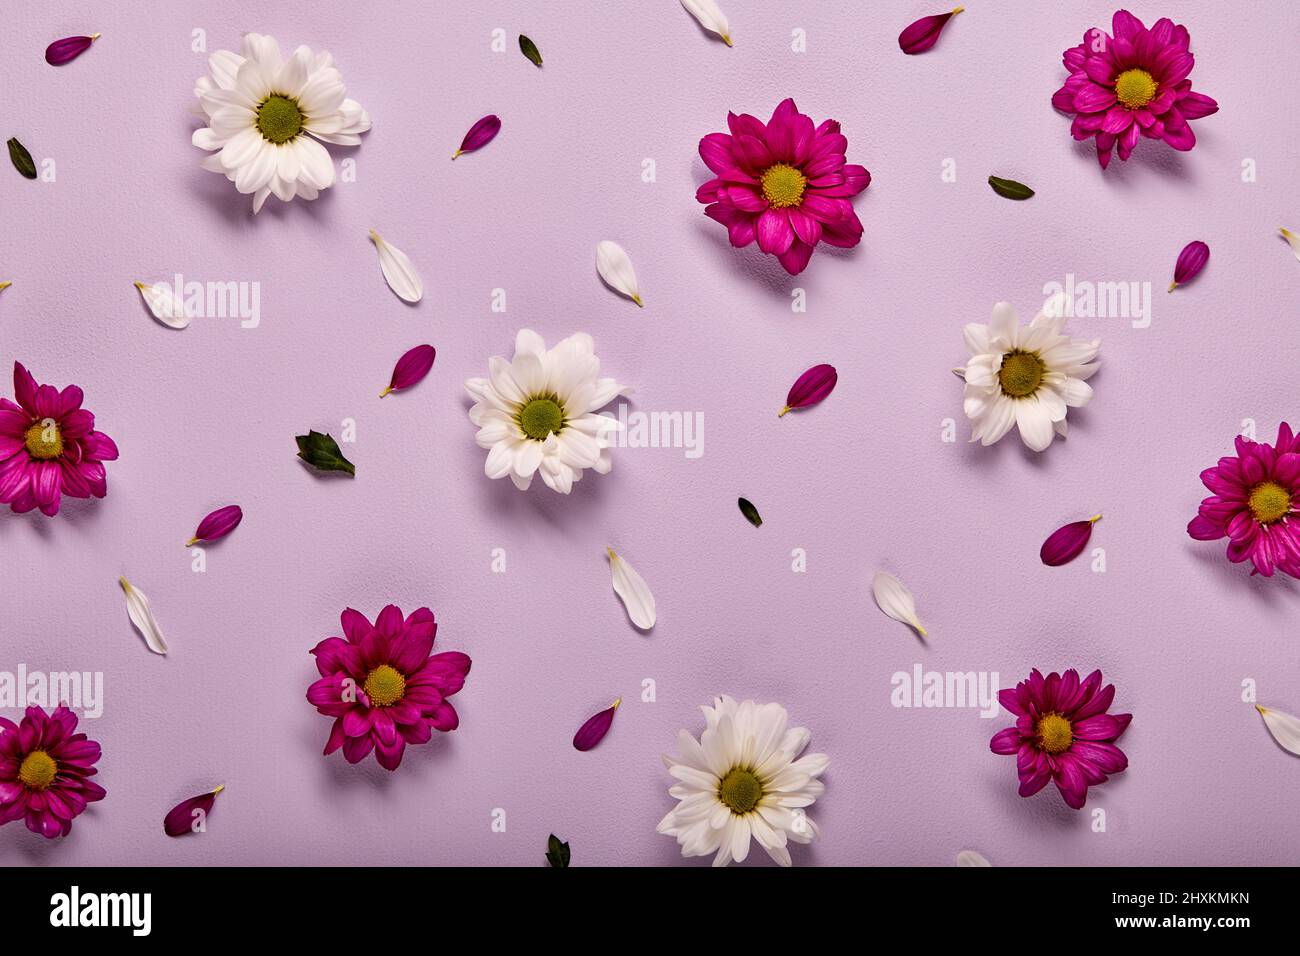 Hermosa flor rosada y blanca gerbera aislada sobre fondo de pared rosa pastel, plana. Flor, flora, detalles concepto de diseño. Vista superior Foto de stock